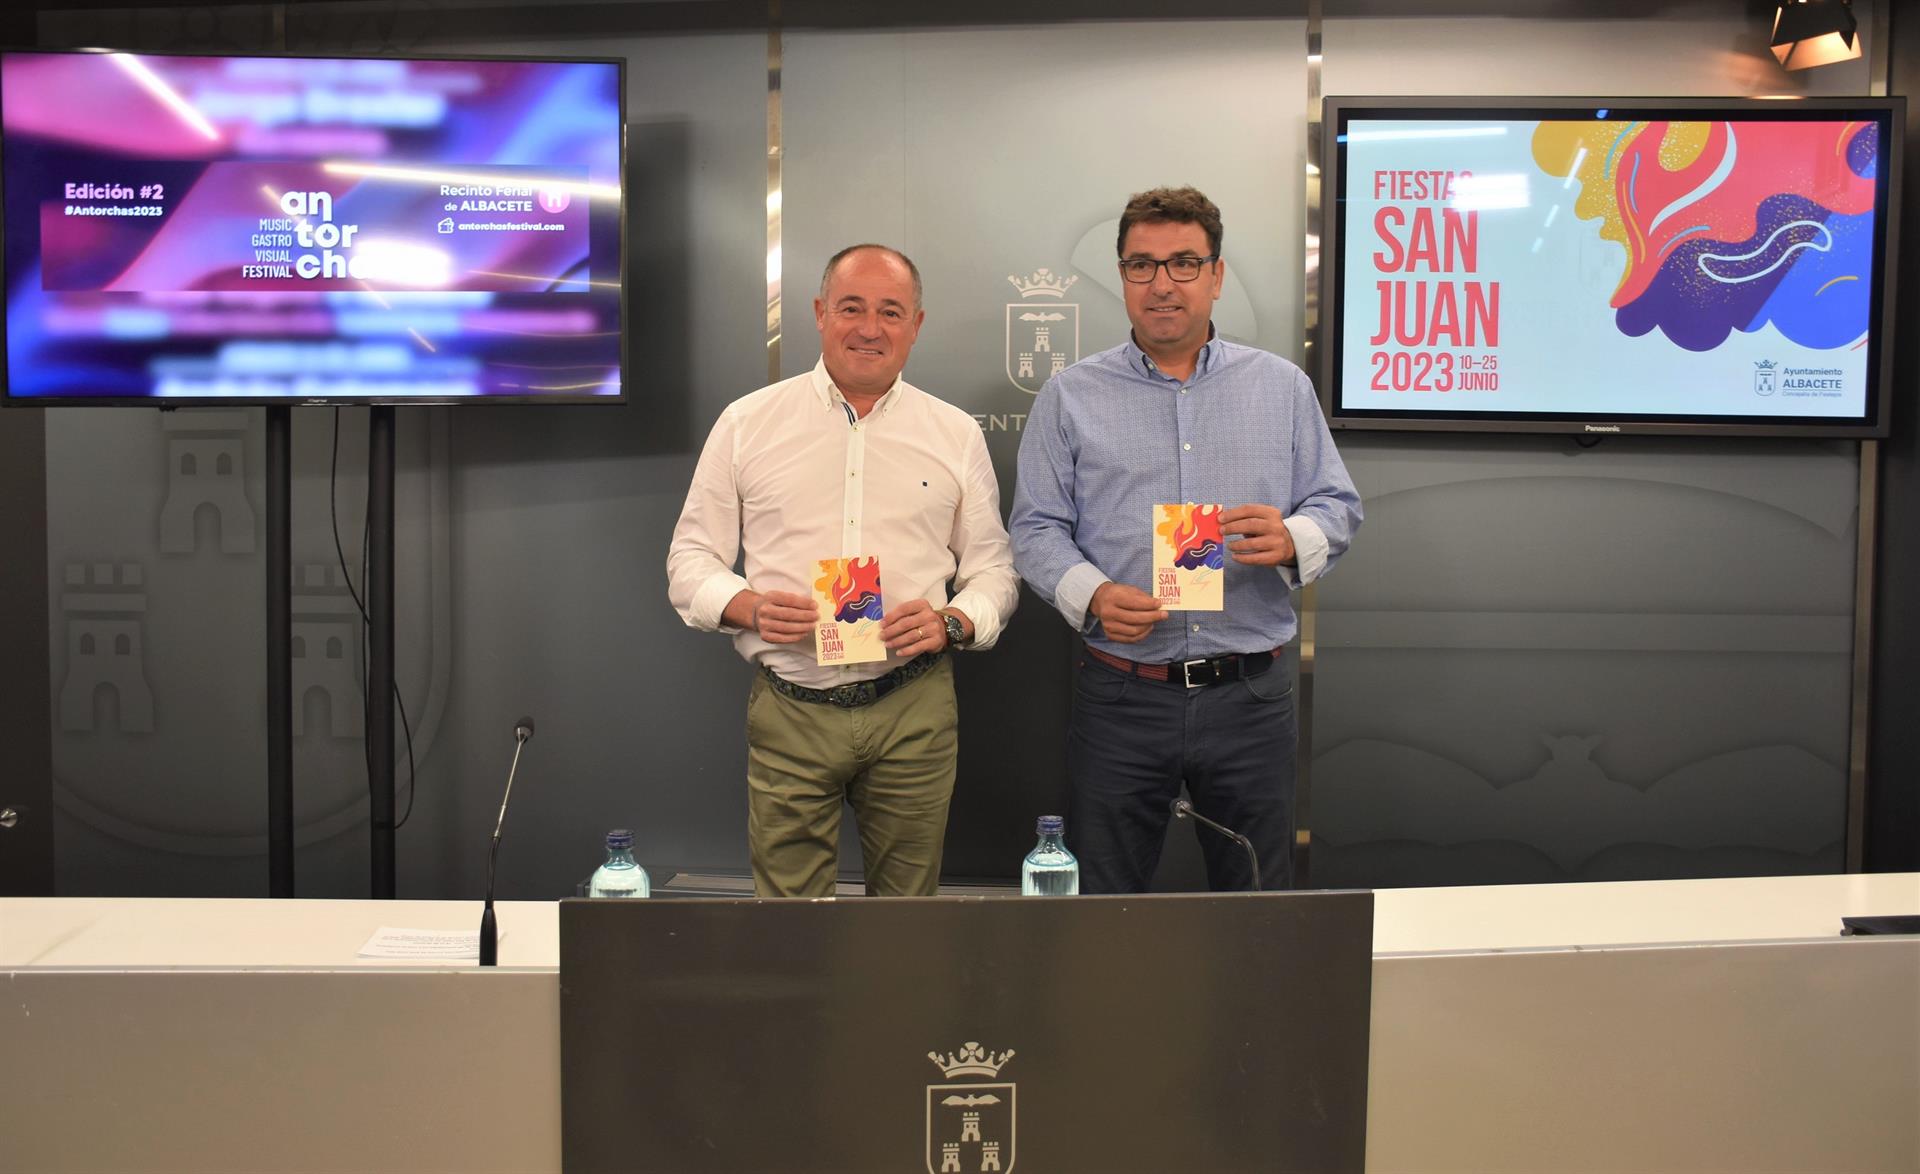 El Ayuntamiento de Albacete acoge la presentación de las actividades por las fiestas de San Juan 2023.